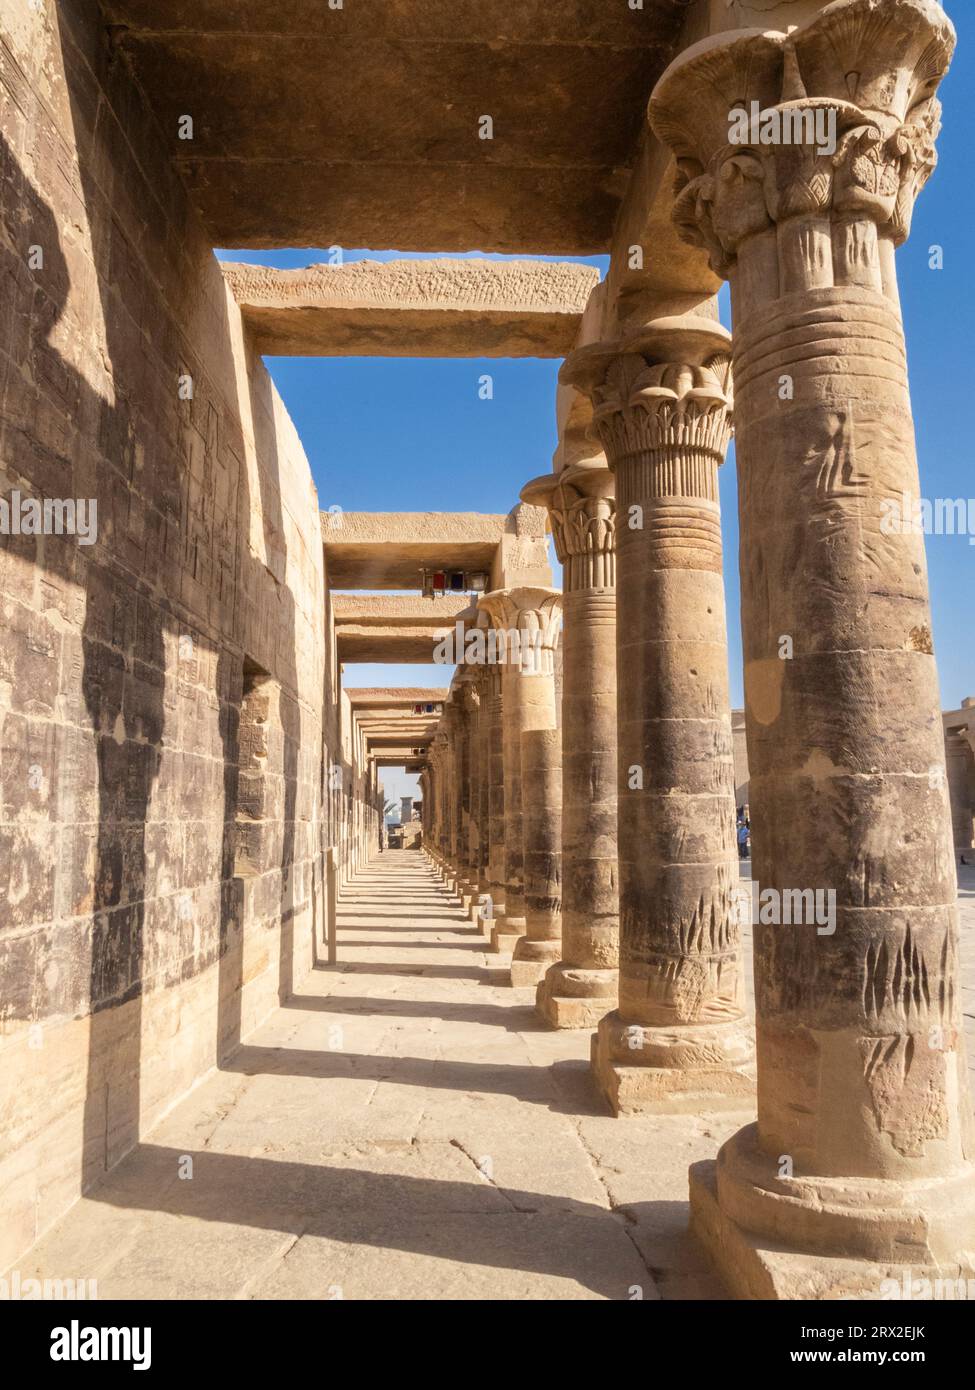 Colonnes du complexe du temple Philae, le temple d'Isis, actuellement sur l'île d'Agilkia, site du patrimoine mondial de l'UNESCO, Egypte, Afrique du Nord, Afrique Banque D'Images